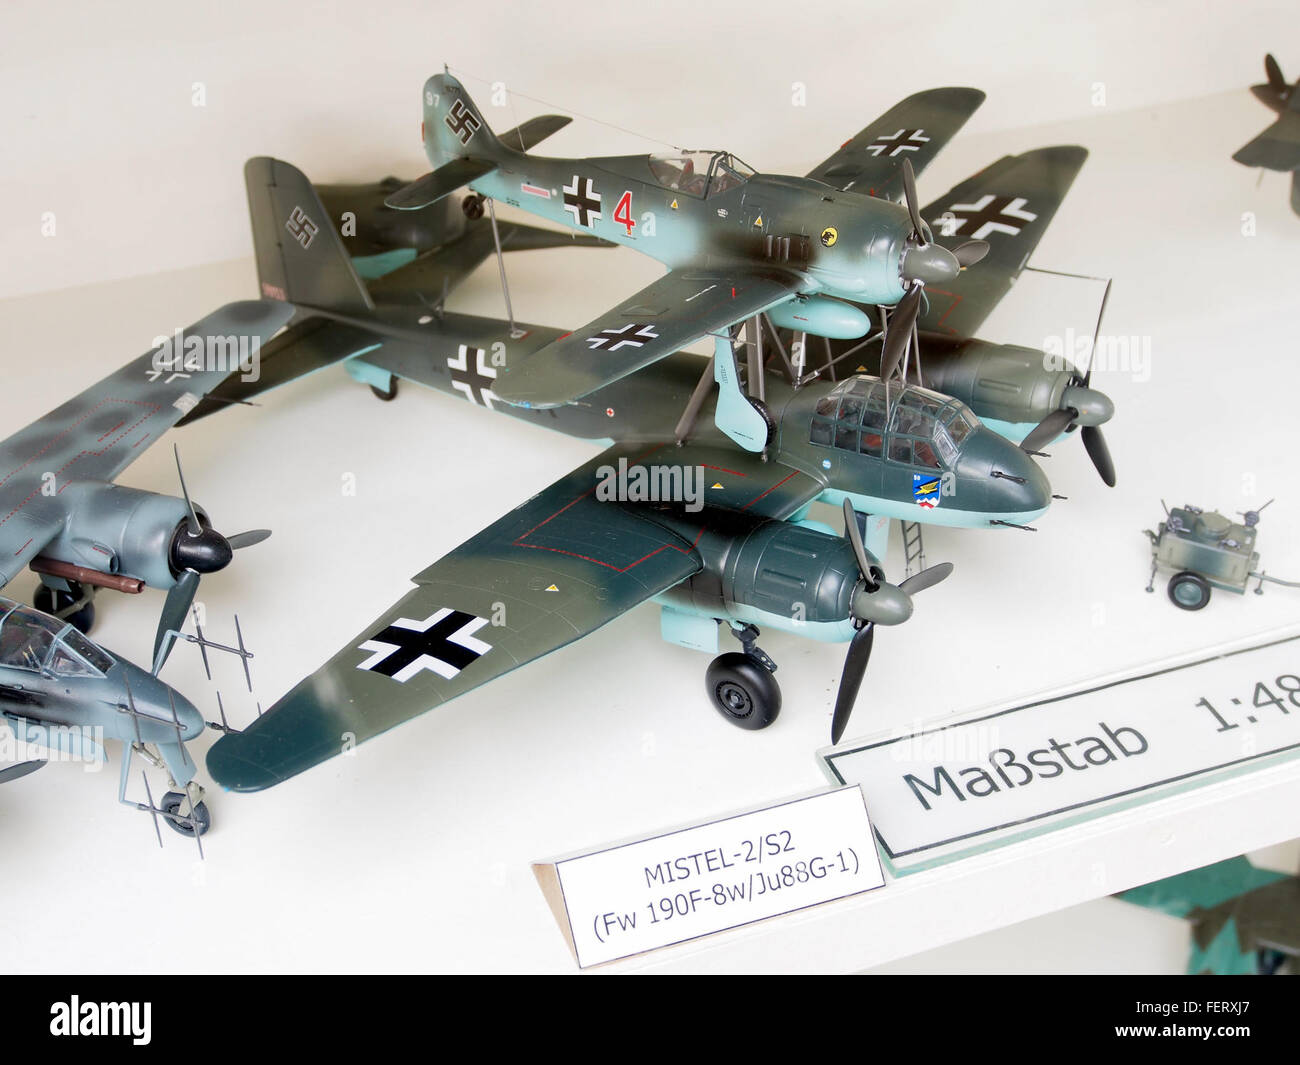 Mistel-2 A2 (FW 190F-8w, Ju88G-1) modello pic1 Foto Stock